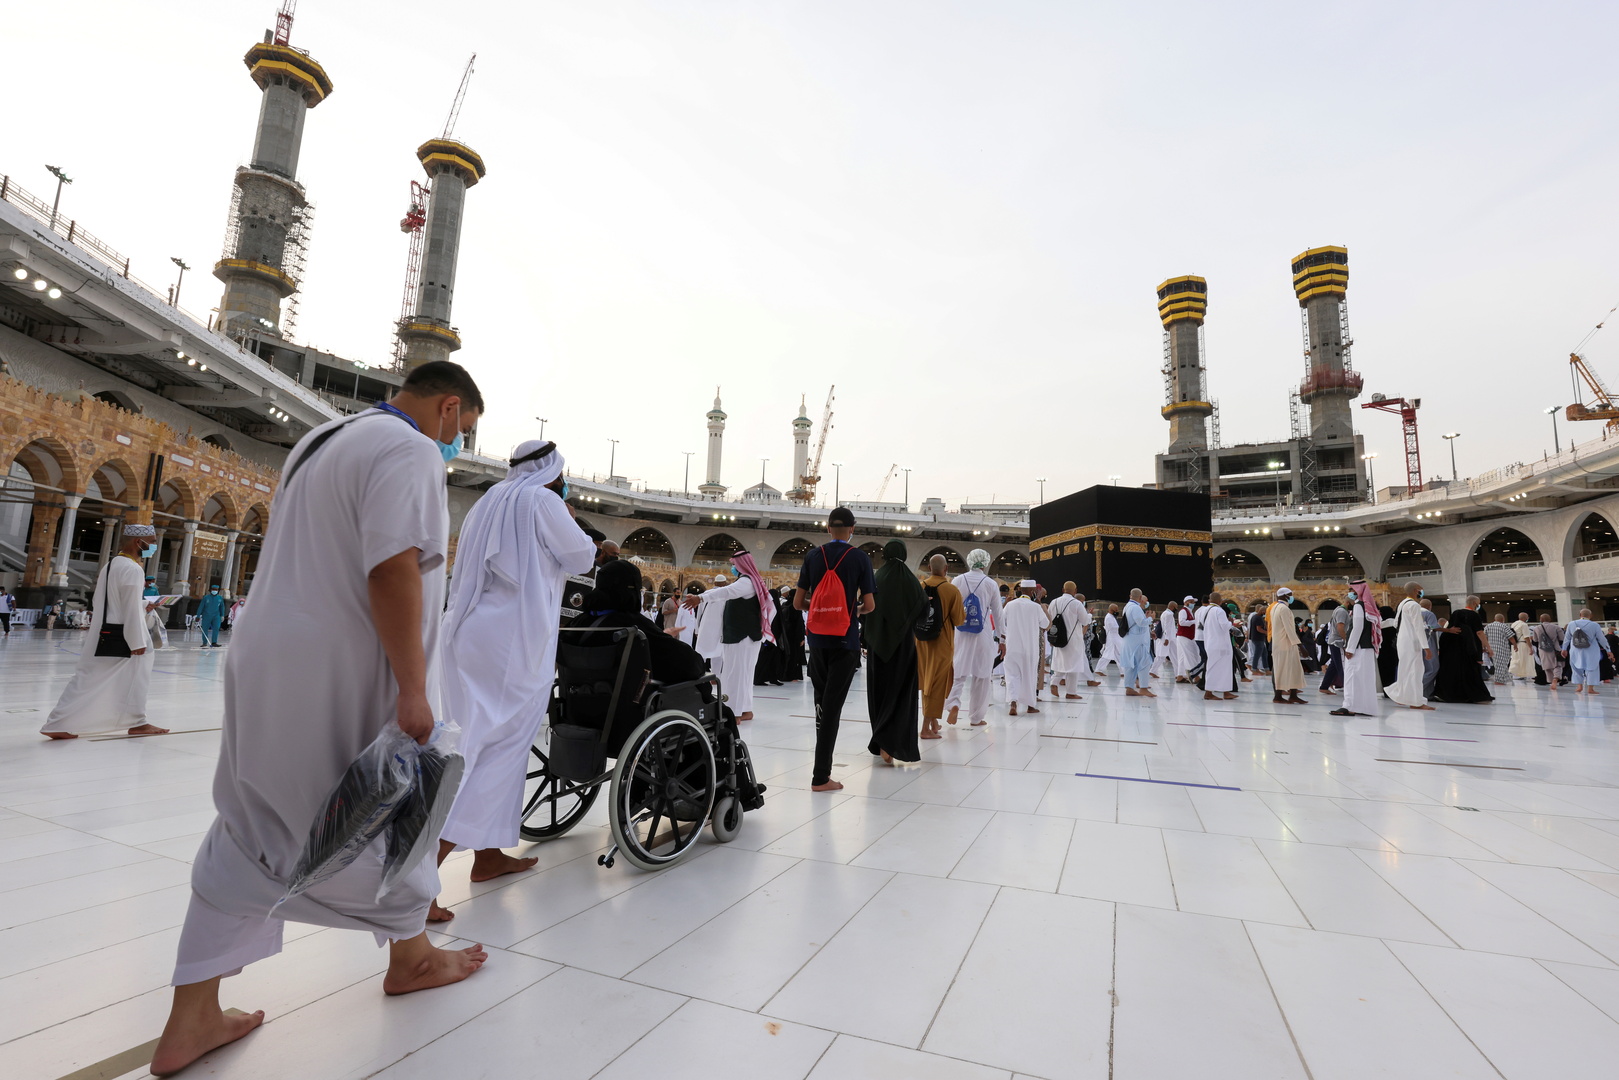 الحجاج يتوافدون إلى المسجد الحرام لأداء طواف الوداع (صور+فيديو)